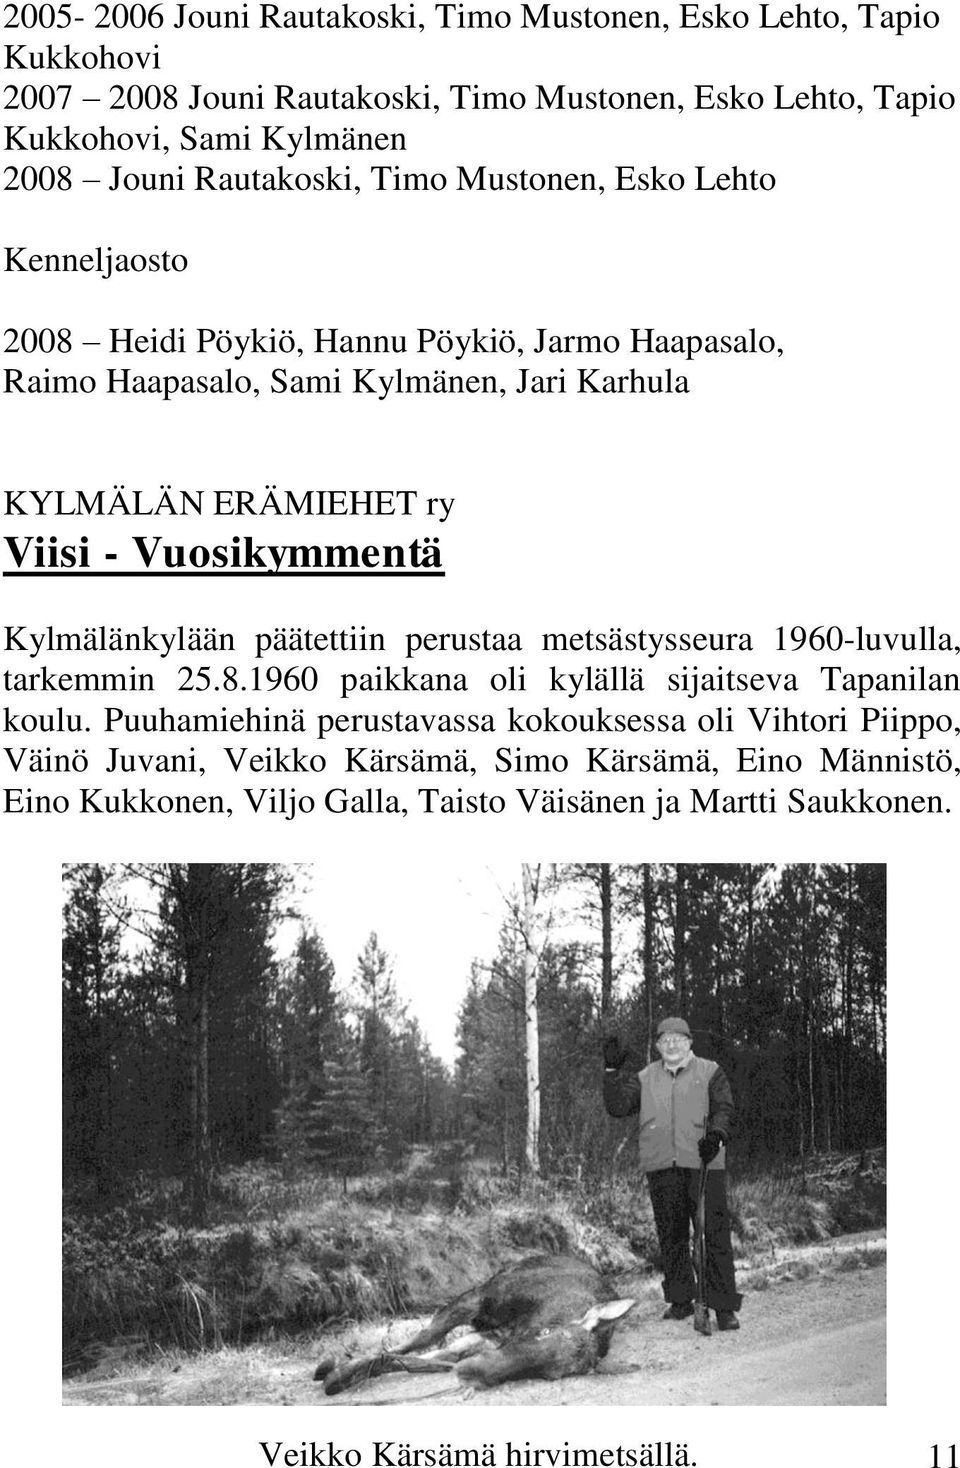 Vuosikymmentä Kylmälänkylään päätettiin perustaa metsästysseura 1960-luvulla, tarkemmin 25.8.1960 paikkana oli kylällä sijaitseva Tapanilan koulu.